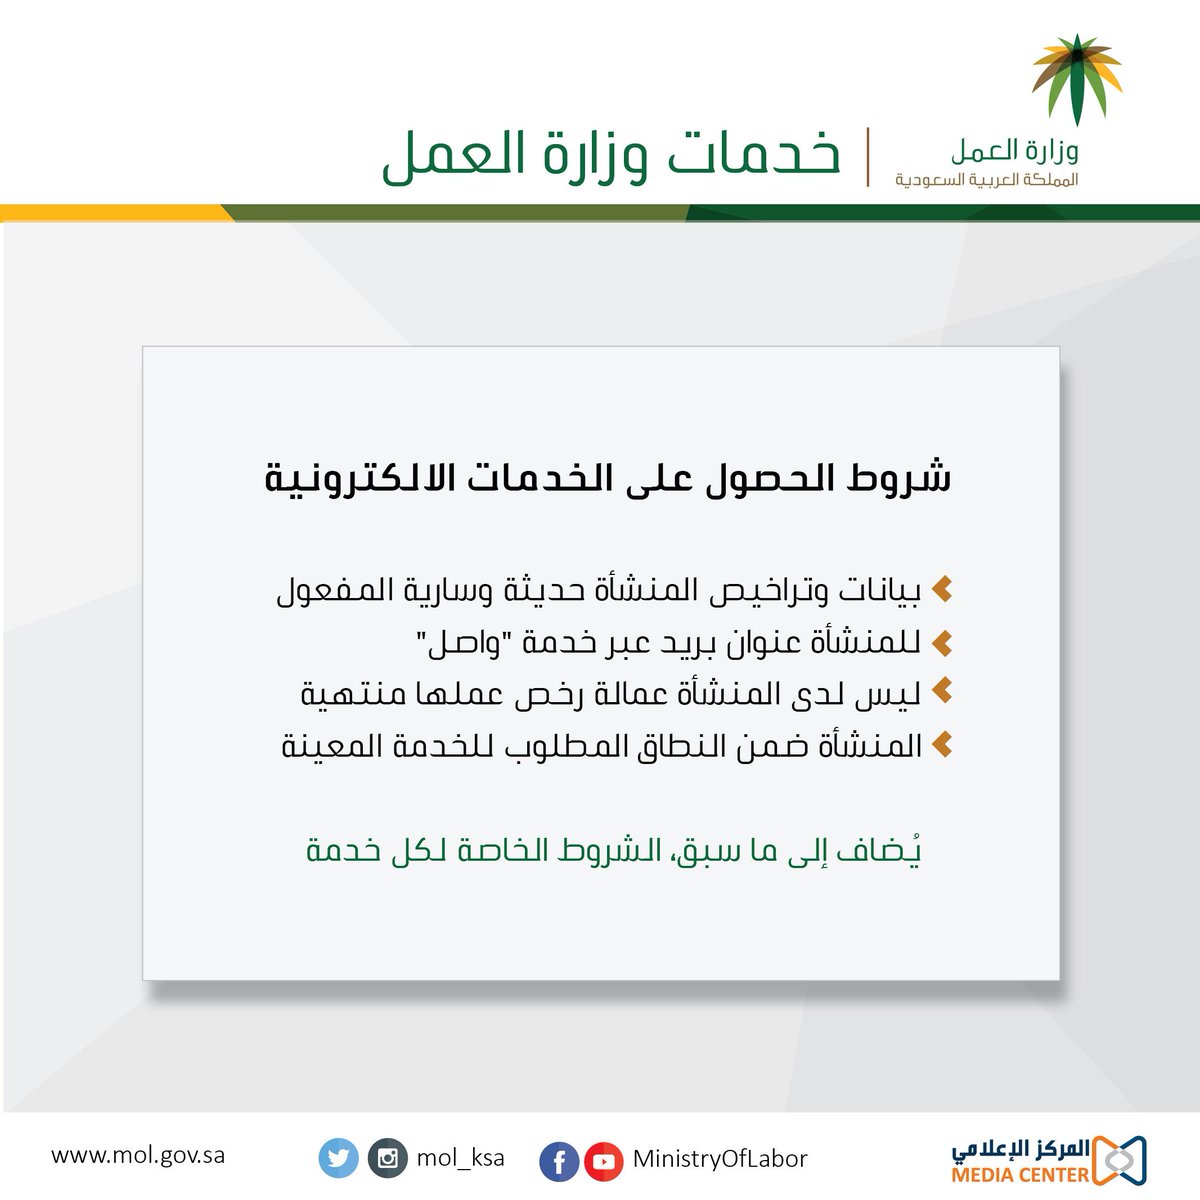 الخدمات الالكترونية وزارة العمل والتنمية الاجتماعية بالعربي